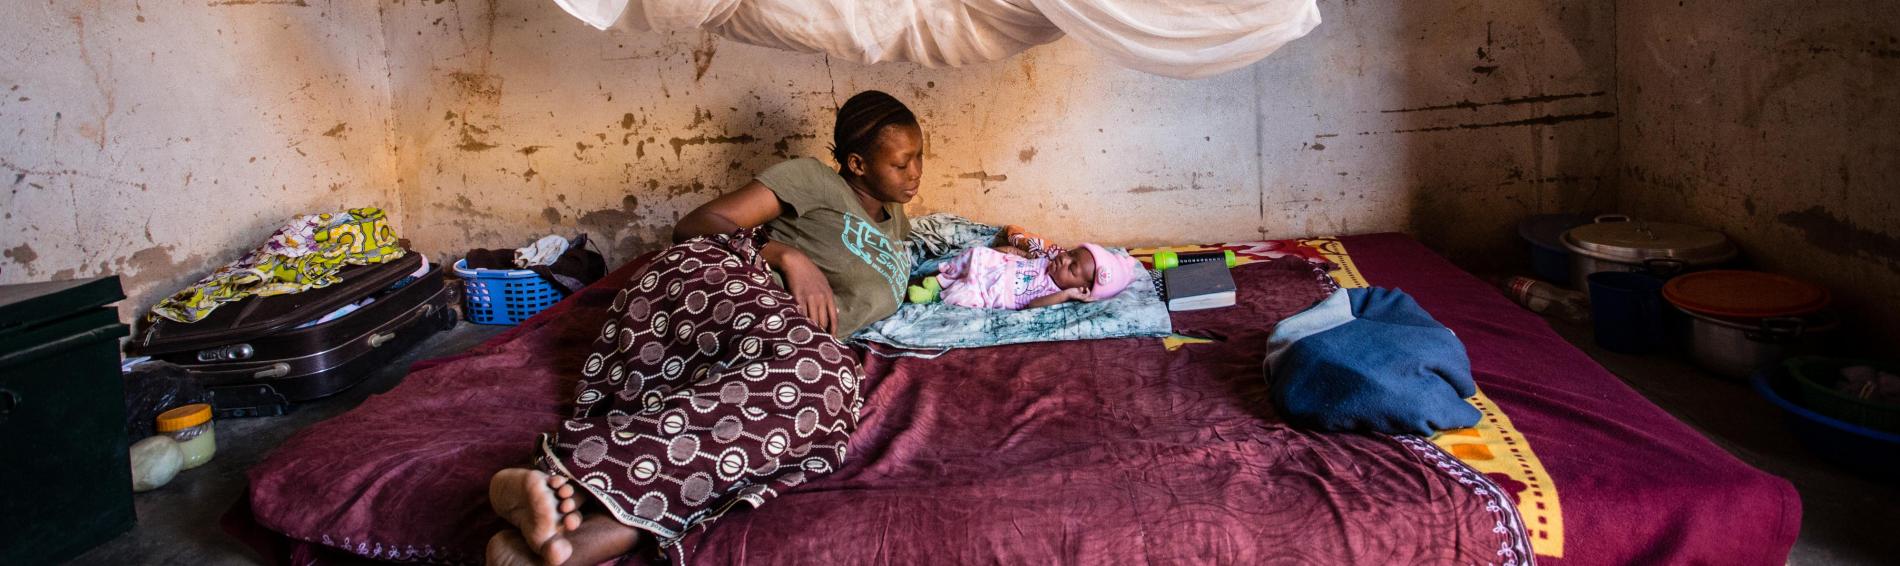 Een Burkinese tienermoeder in kleurrijke jurk ligt uitgestrekt naast haar zuigeling op een matras tussen een koffer, potten en pannen. De kamer is erg kaal. Aan het plafond hangt een muskietennet.